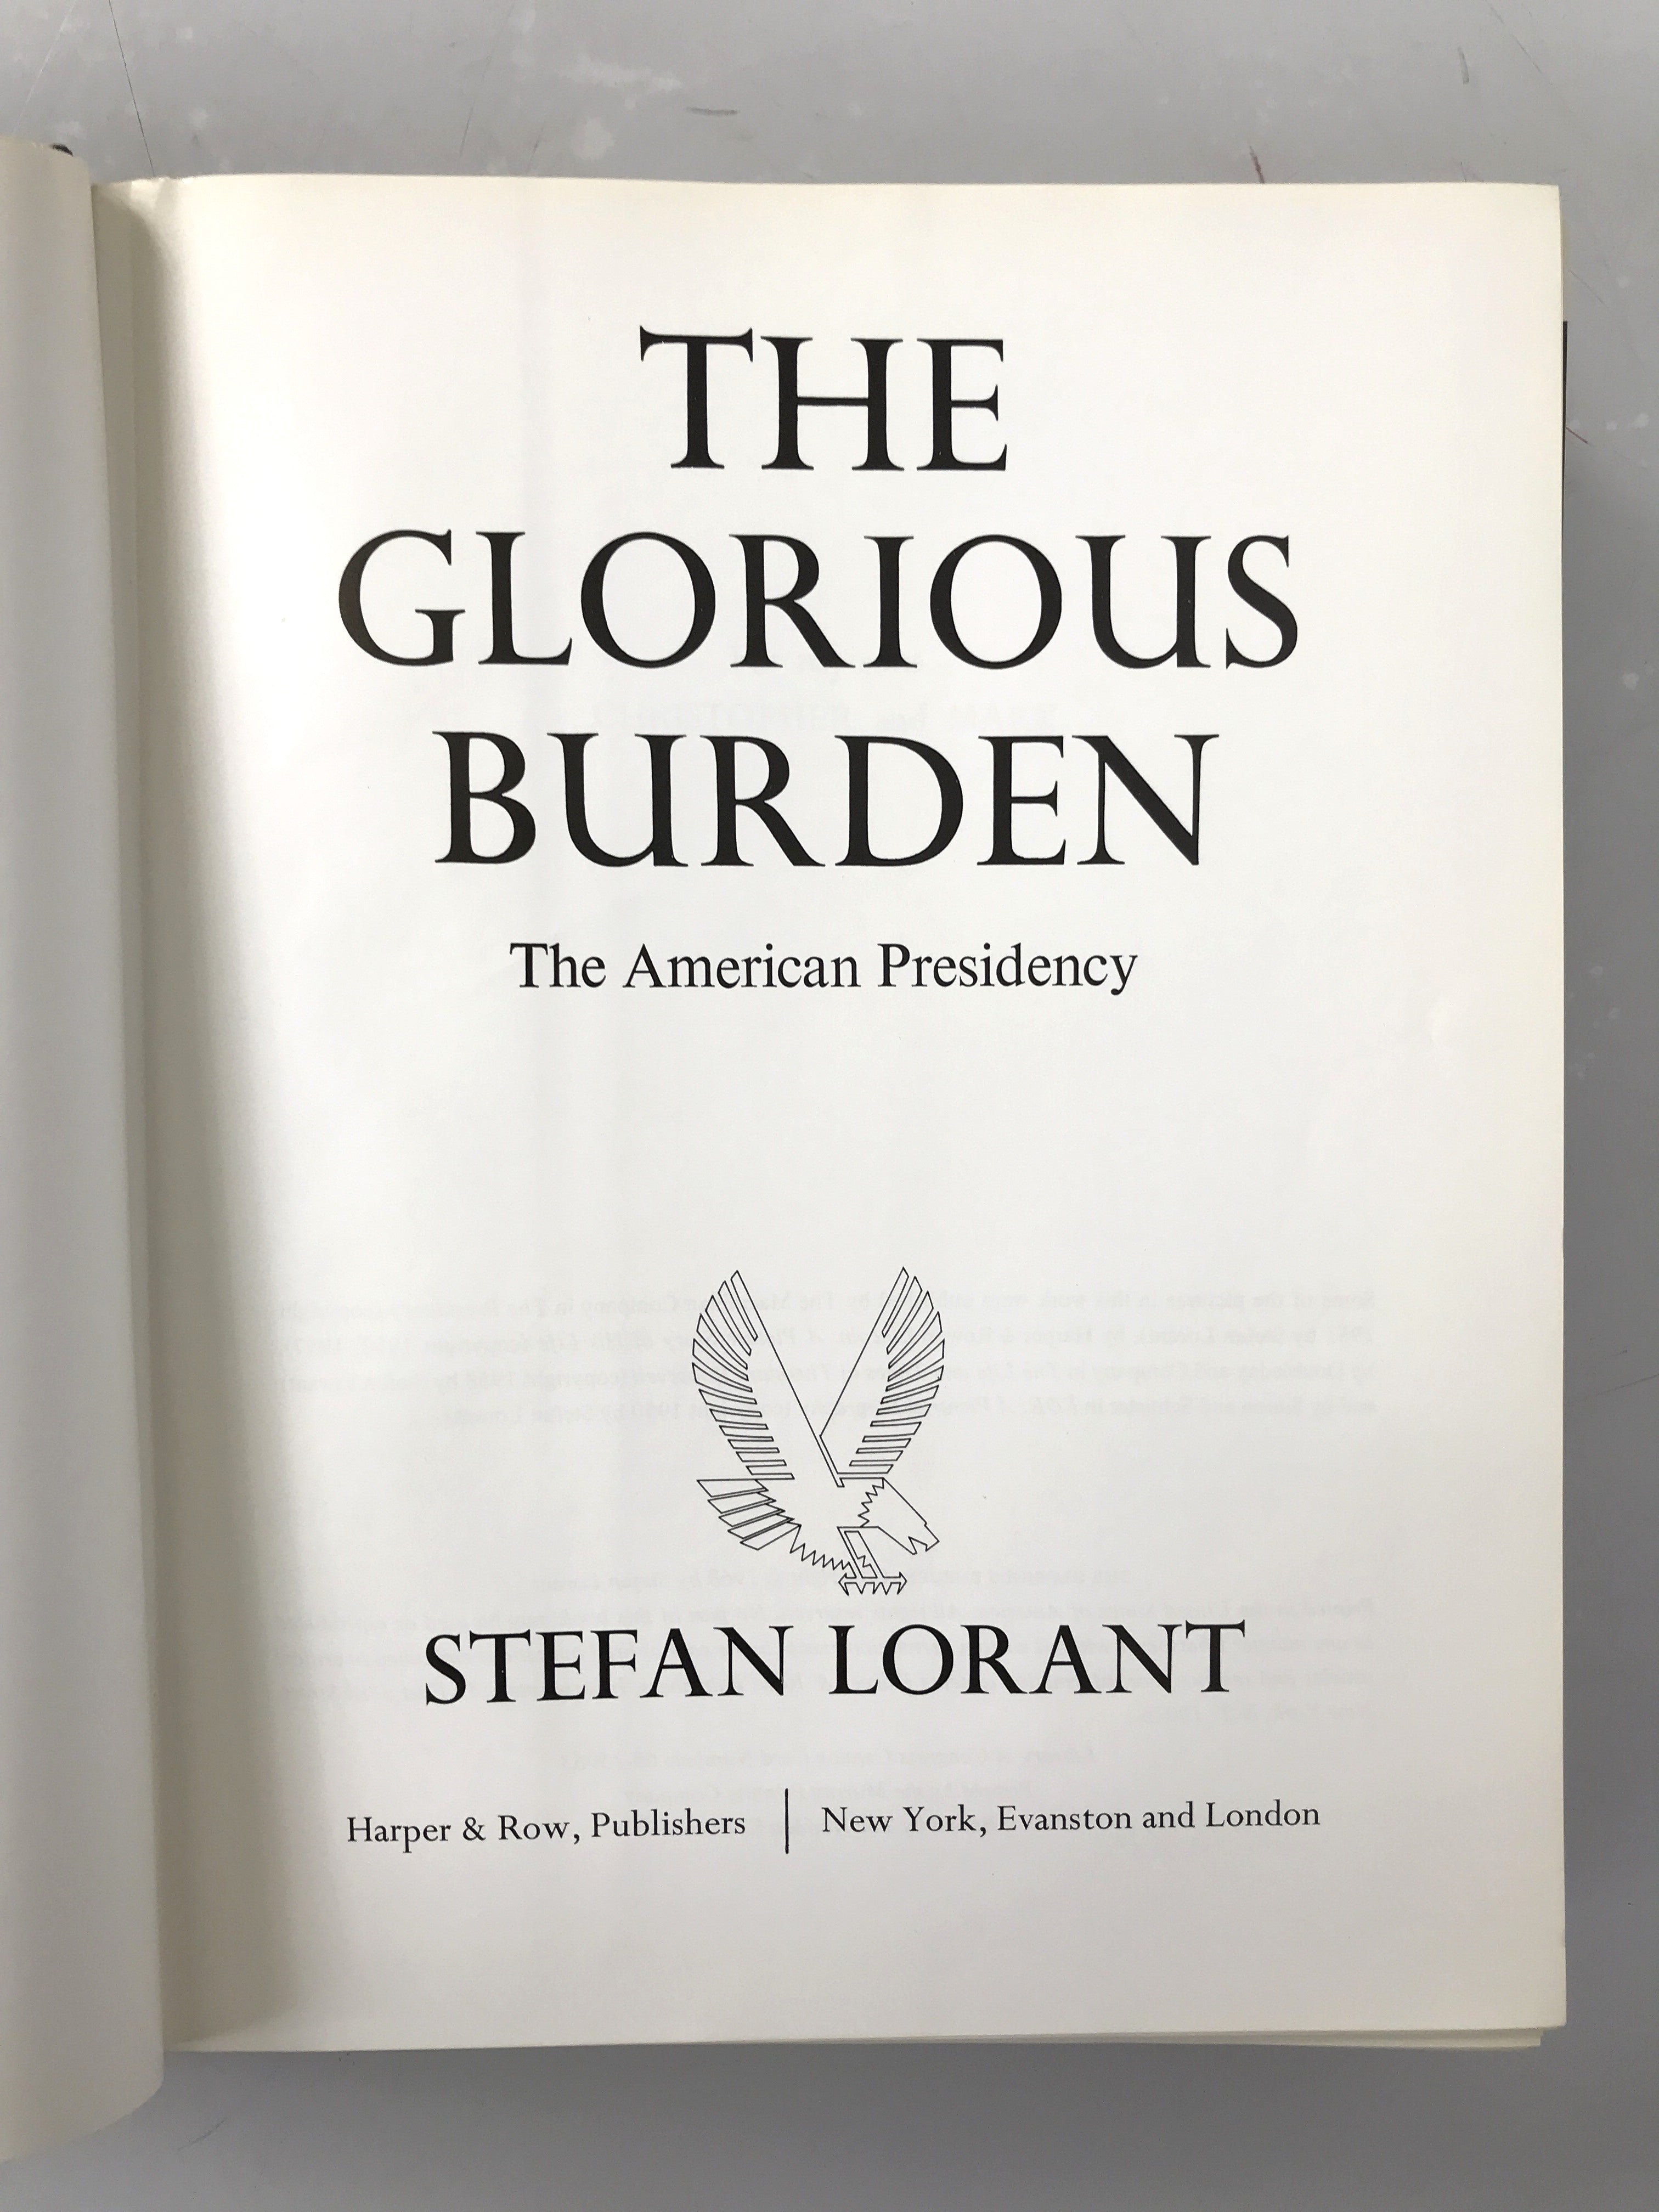 The Glorious Burden The American Presidency Stefan Lorant 1968 HC DJ